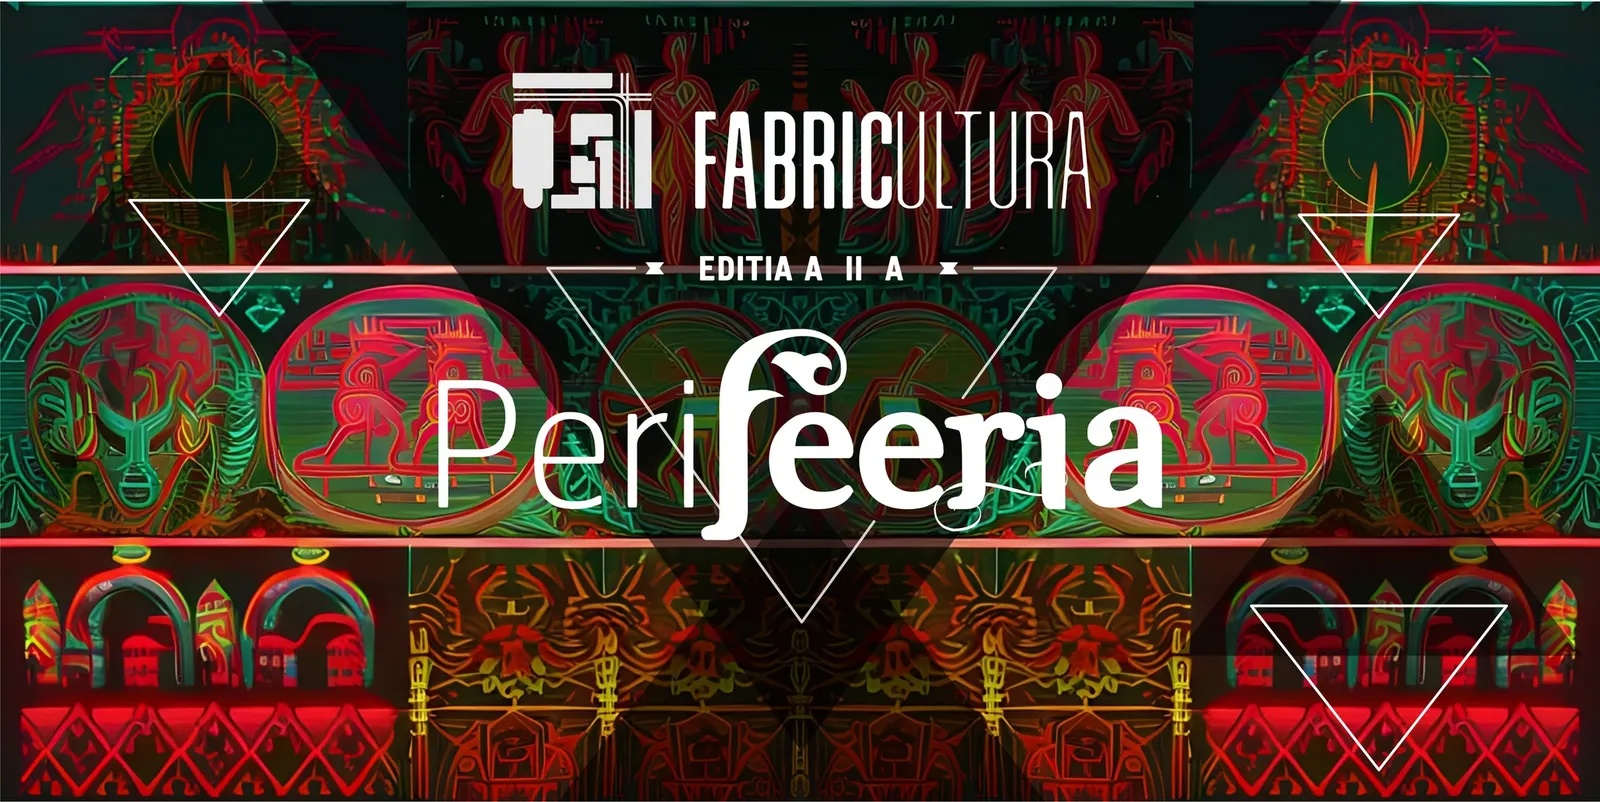 FABRICULTURA - PeriFEERIA